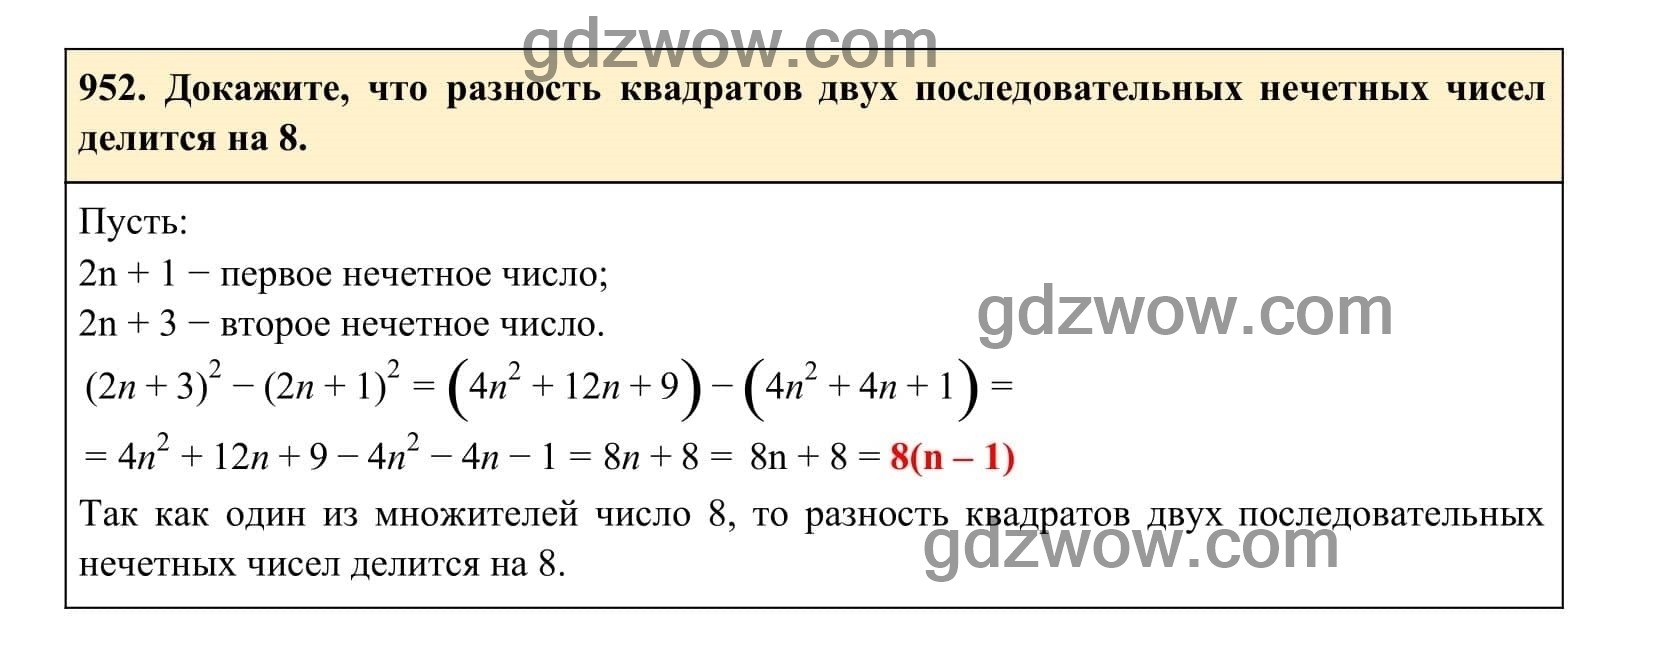 Упражнение 952 - ГДЗ по Алгебре 7 класс Учебник Макарычев (решебник) - GDZwow